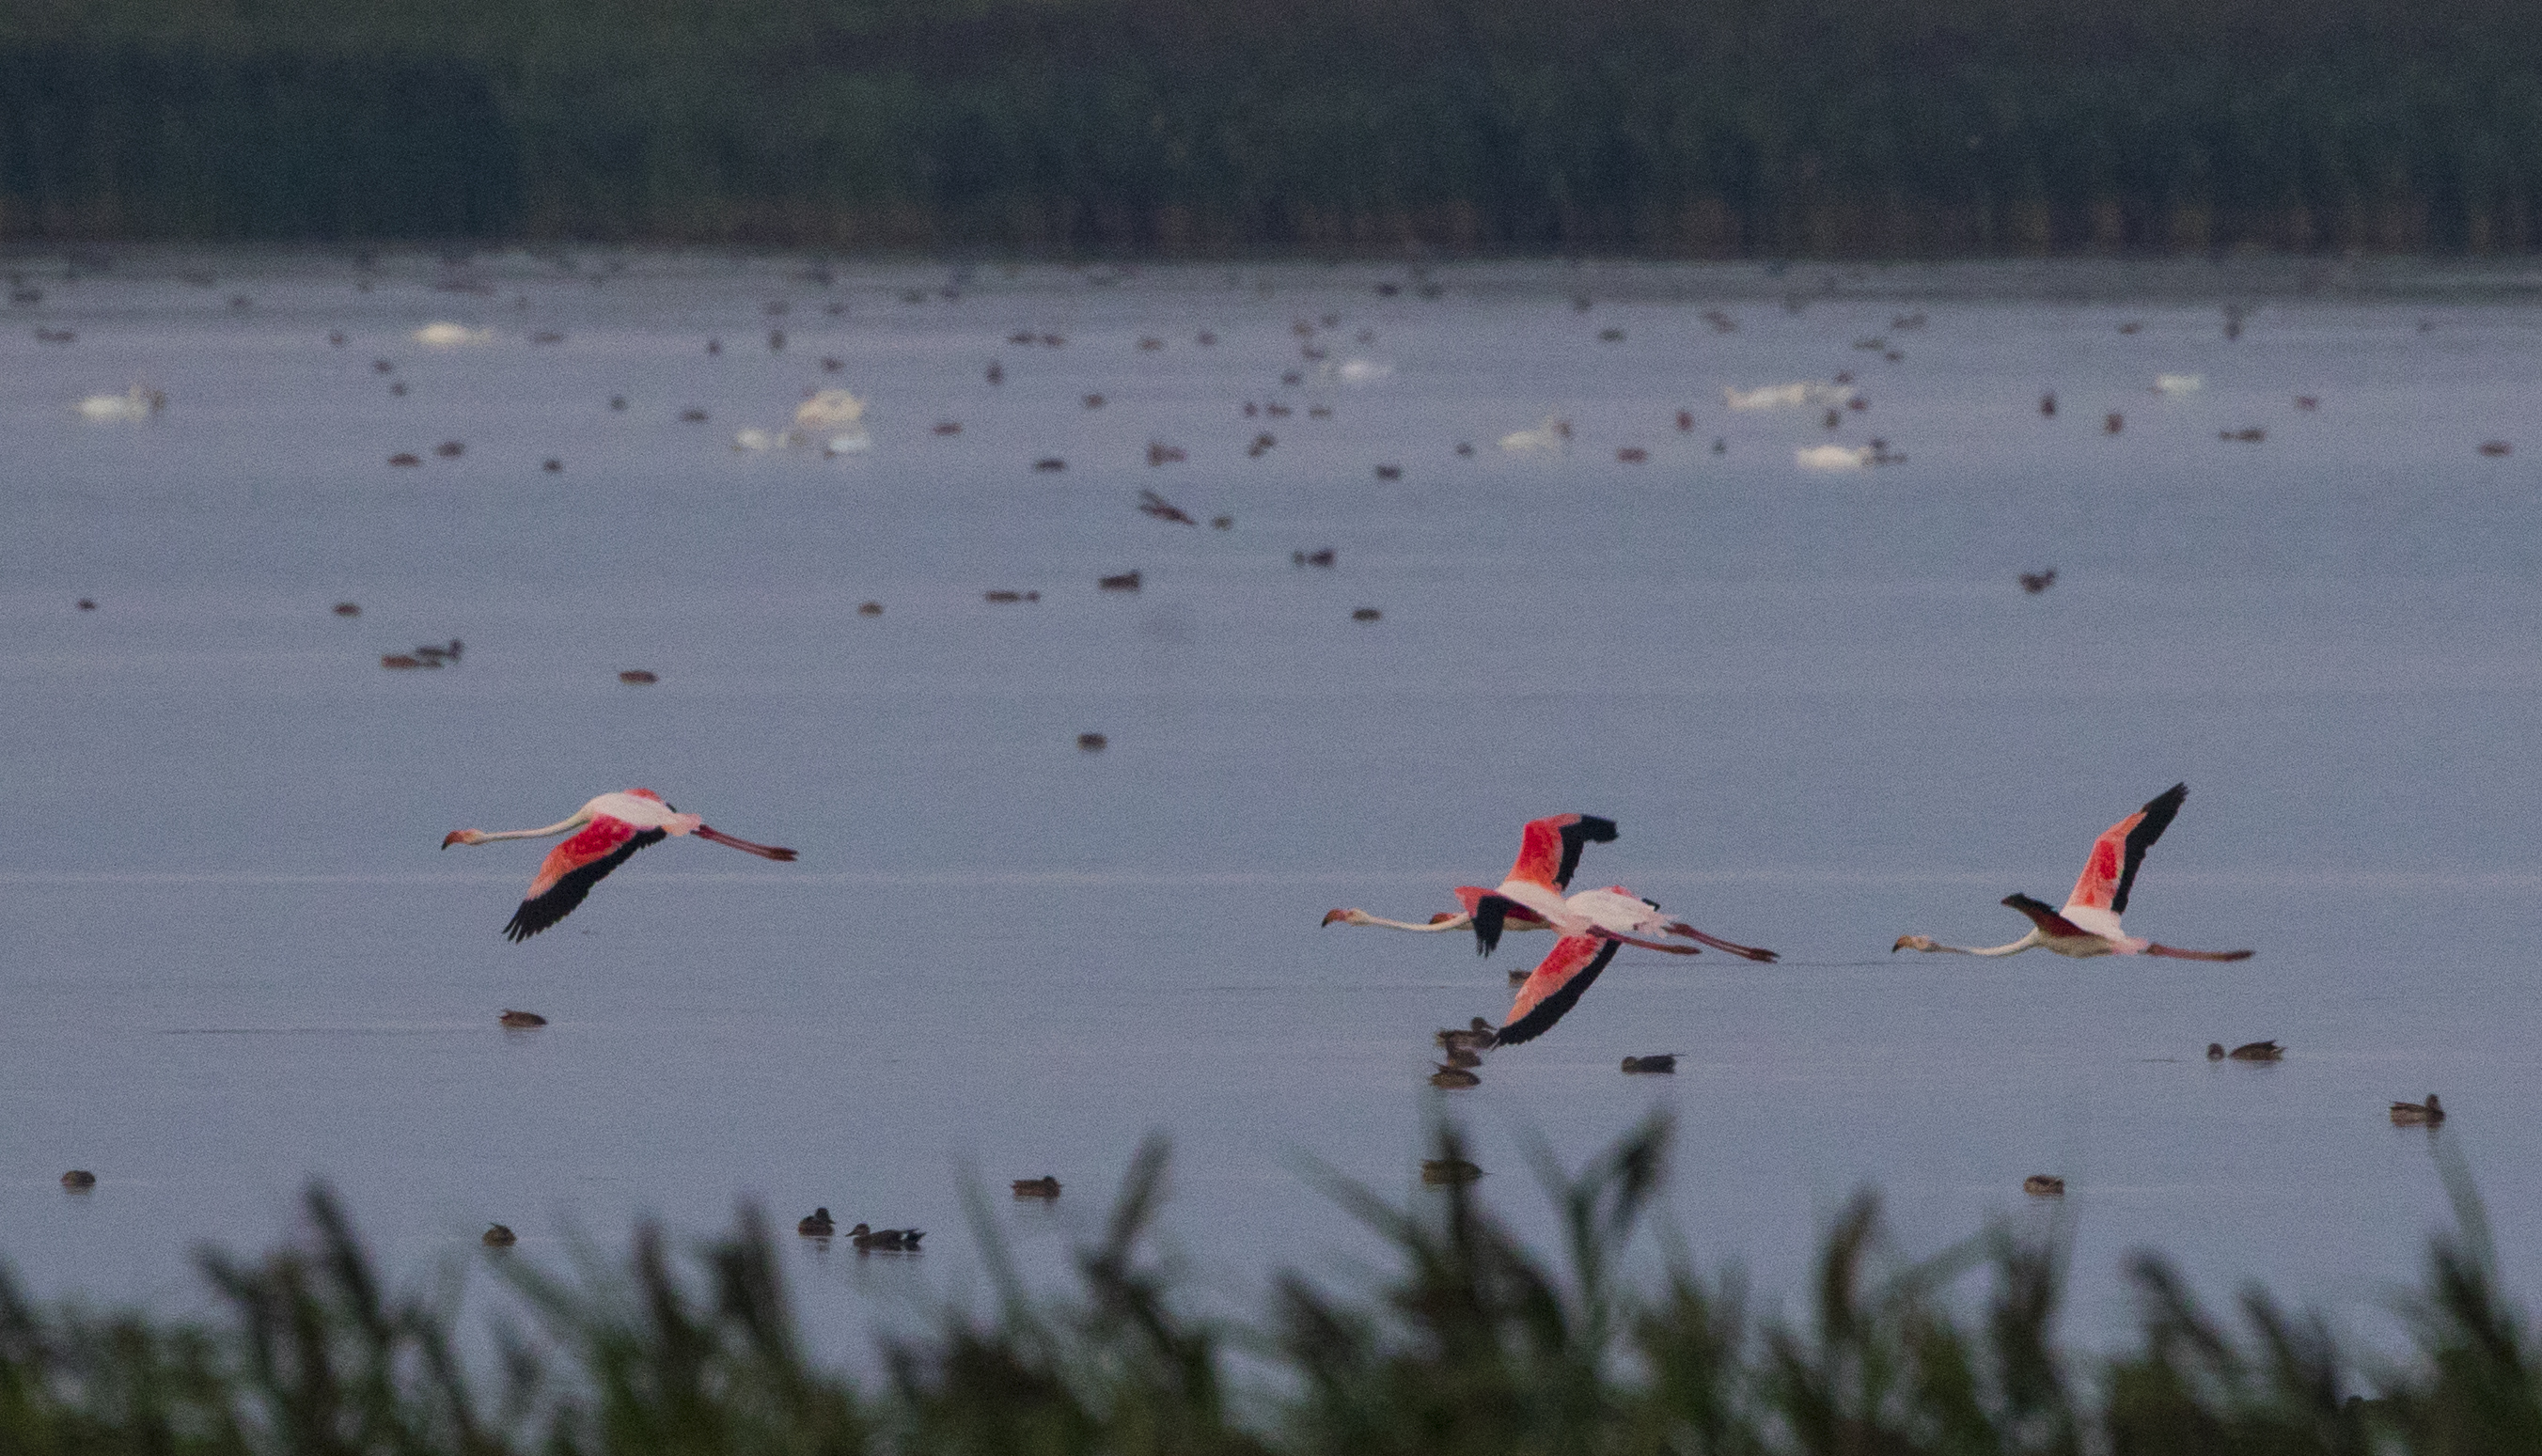 Aparitie foarte rara in Romania. Patru pasari flamingo au fost fotografiate pe un lac, spre bucuria ornitologilor. FOTO